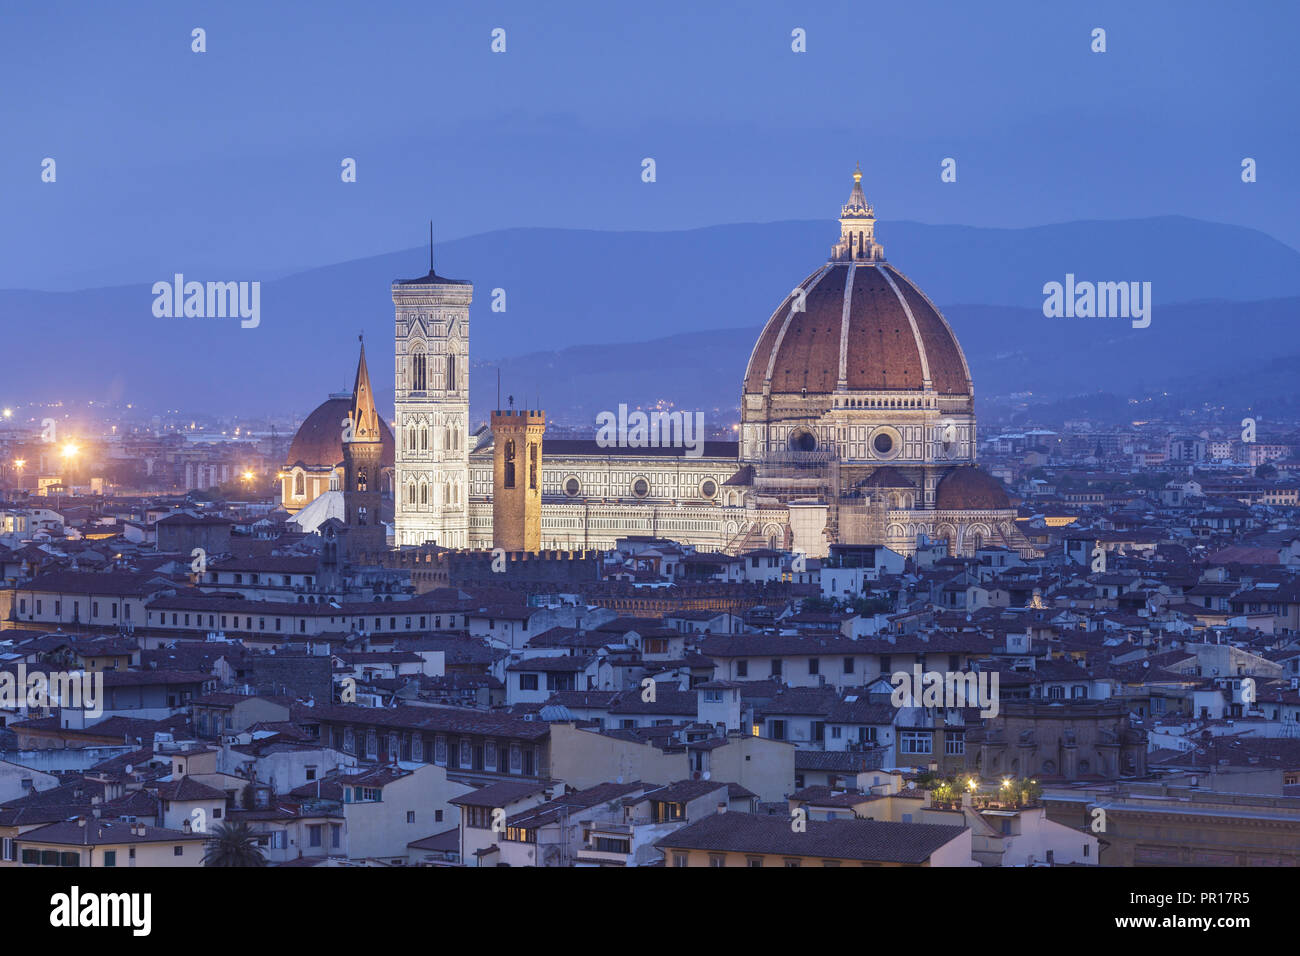 La cathédrale (Santa Maria del Fiore), site du patrimoine mondial de l'UNESCO, Florence, Italie, Europe Banque D'Images